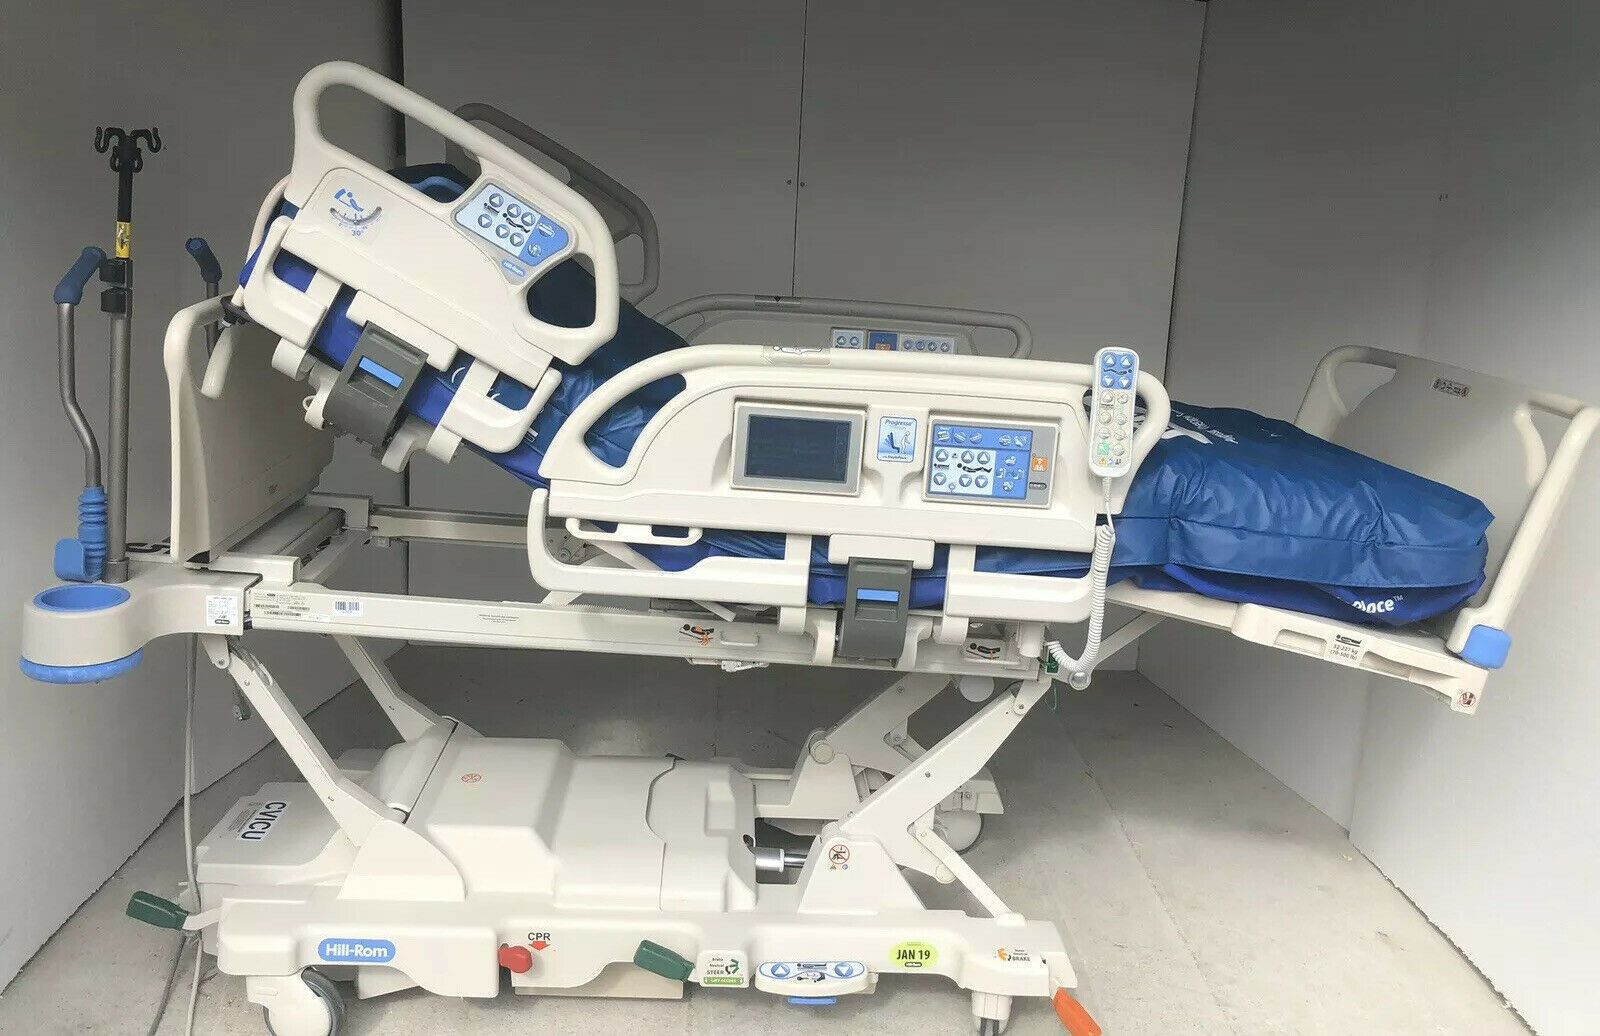 2015 Model Hill Rom Progressa床系统P7500型重症监护室